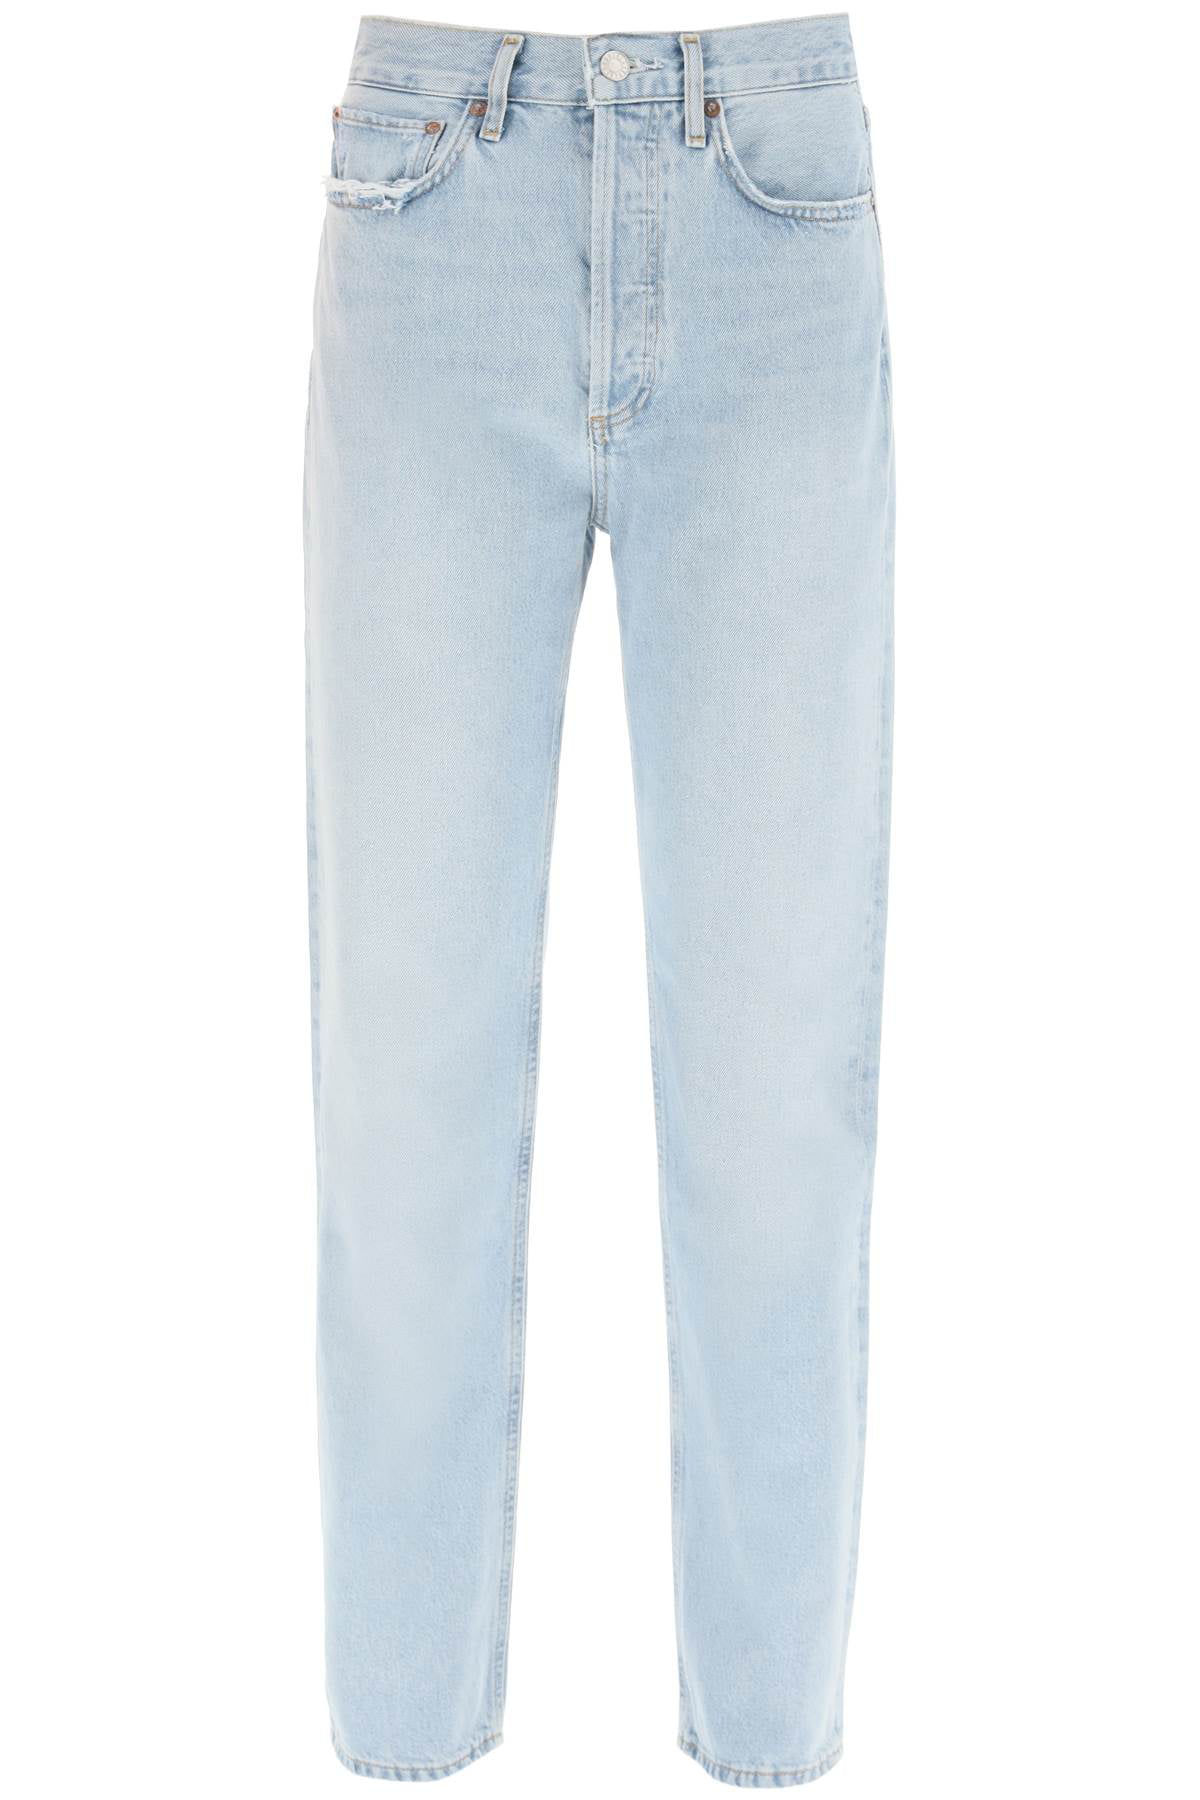 Agolde 90's pinch waist high-waisted jeans - Walmart.com